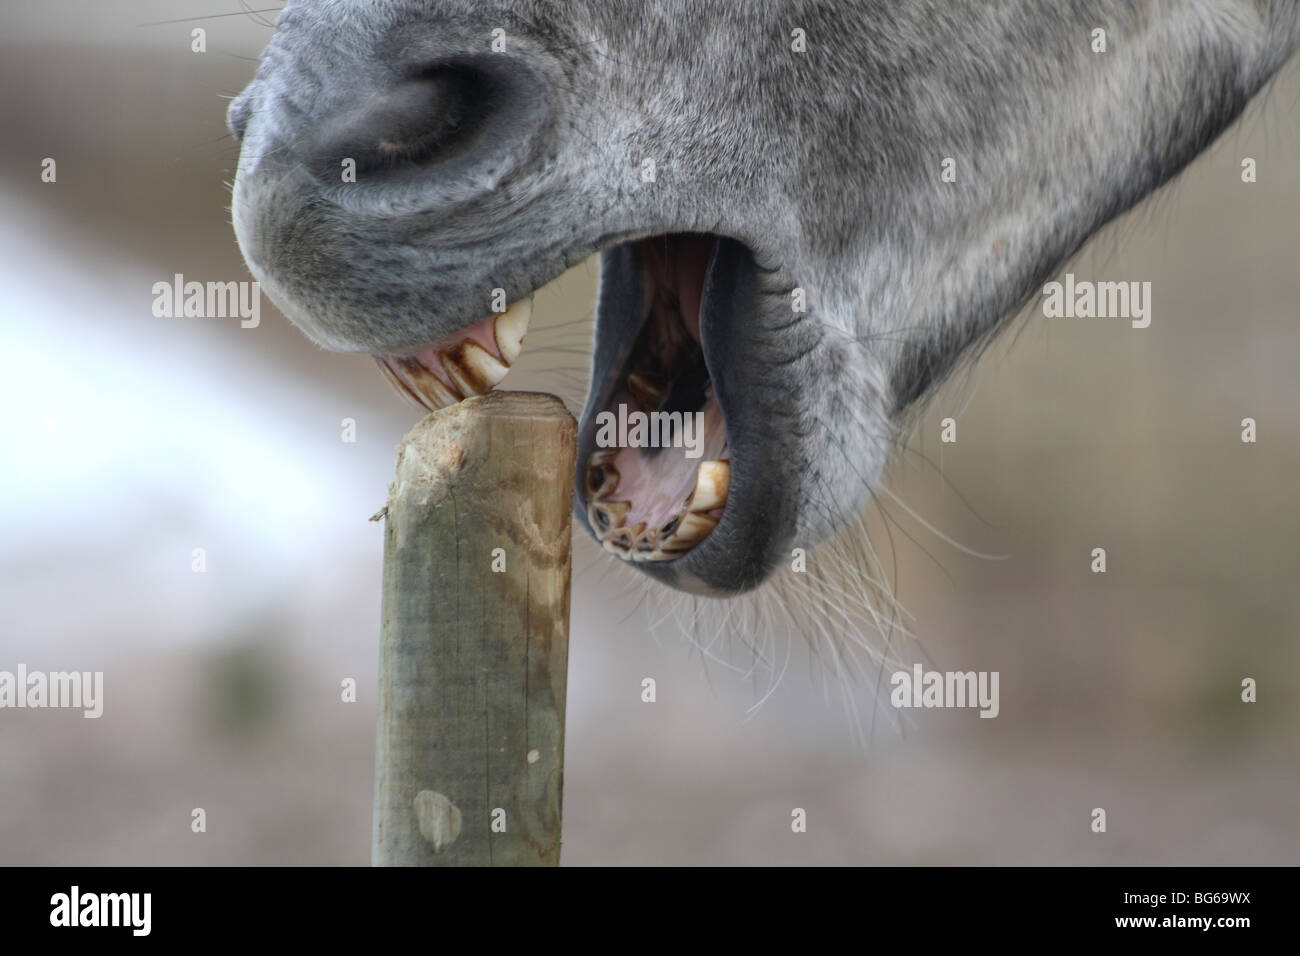 Cavallo grigio di mangiare sul piccolo palo di legno Foto Stock